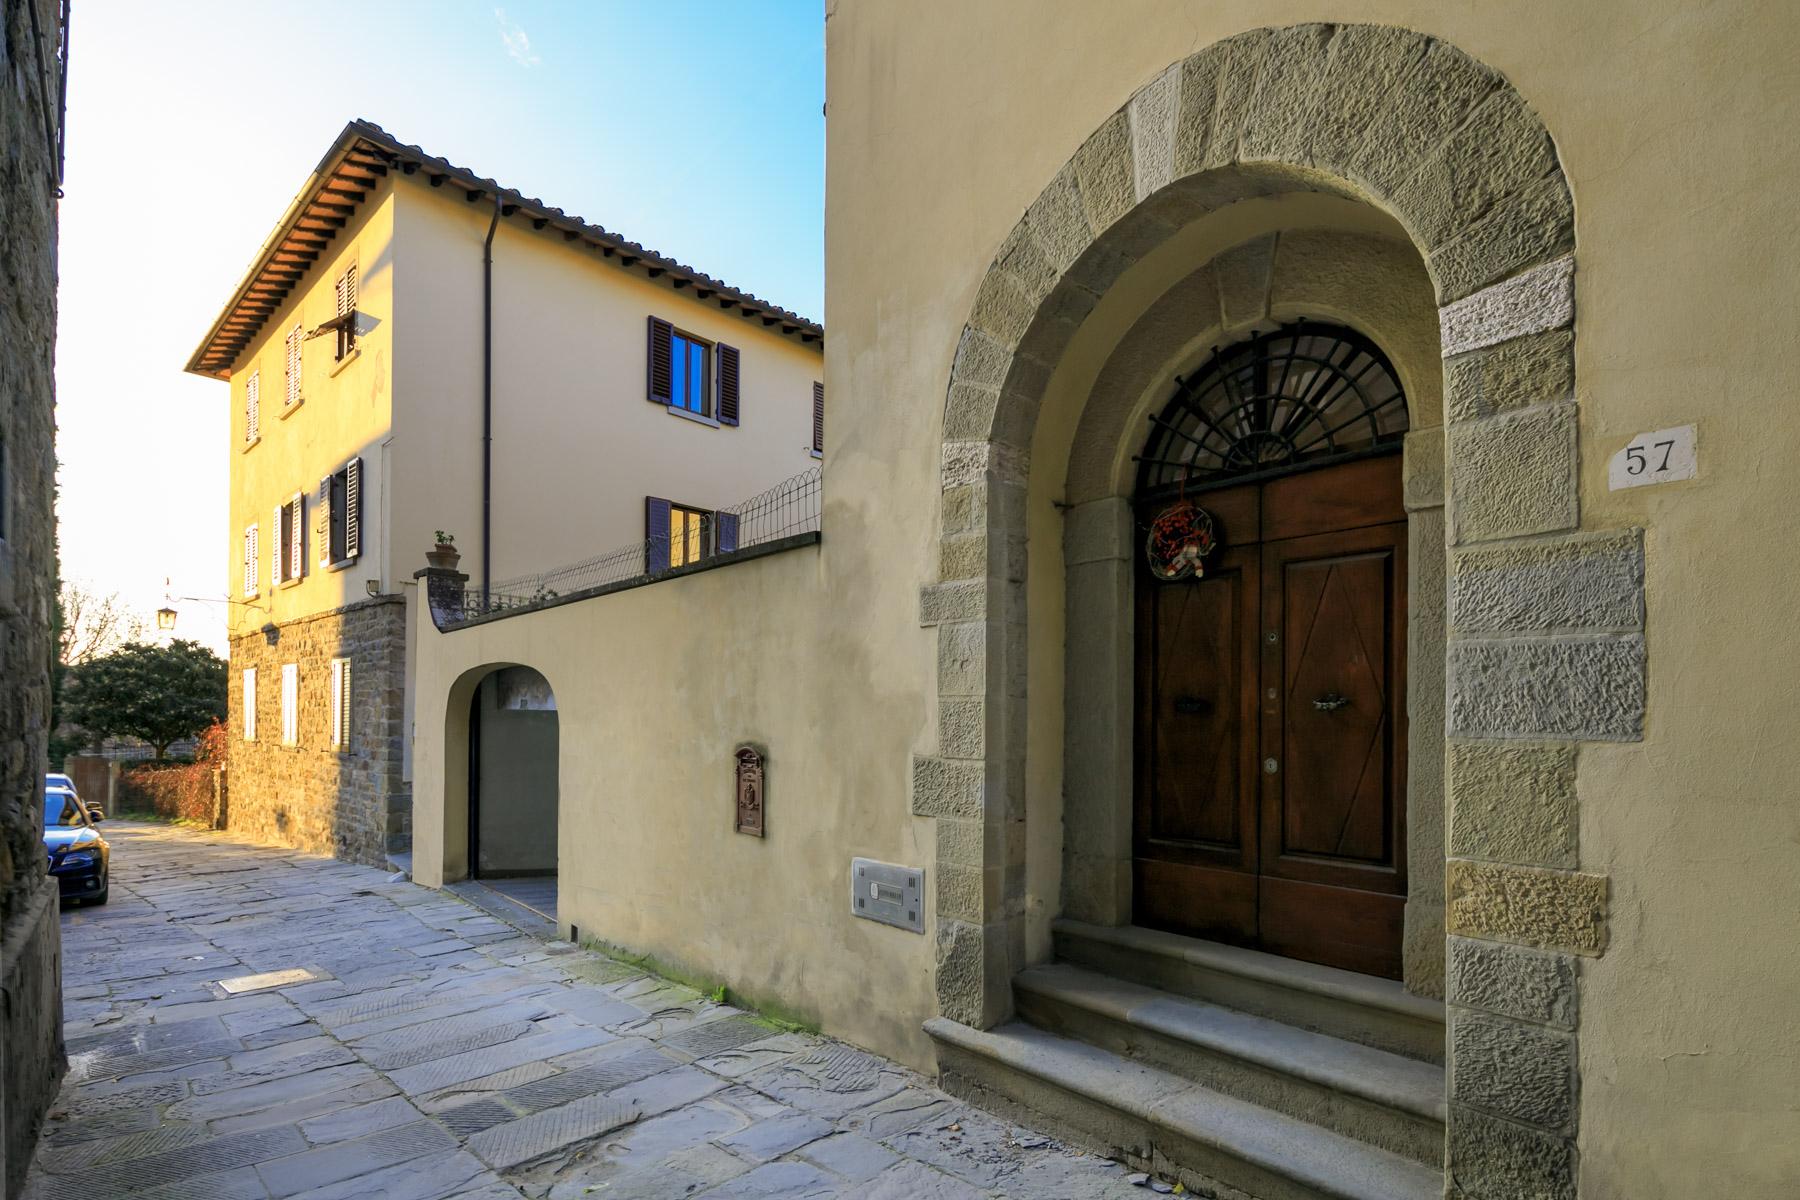 Palazzo Rinascimentale in Vendita a pochi passi da Piazza Grande, Arezzo - 26